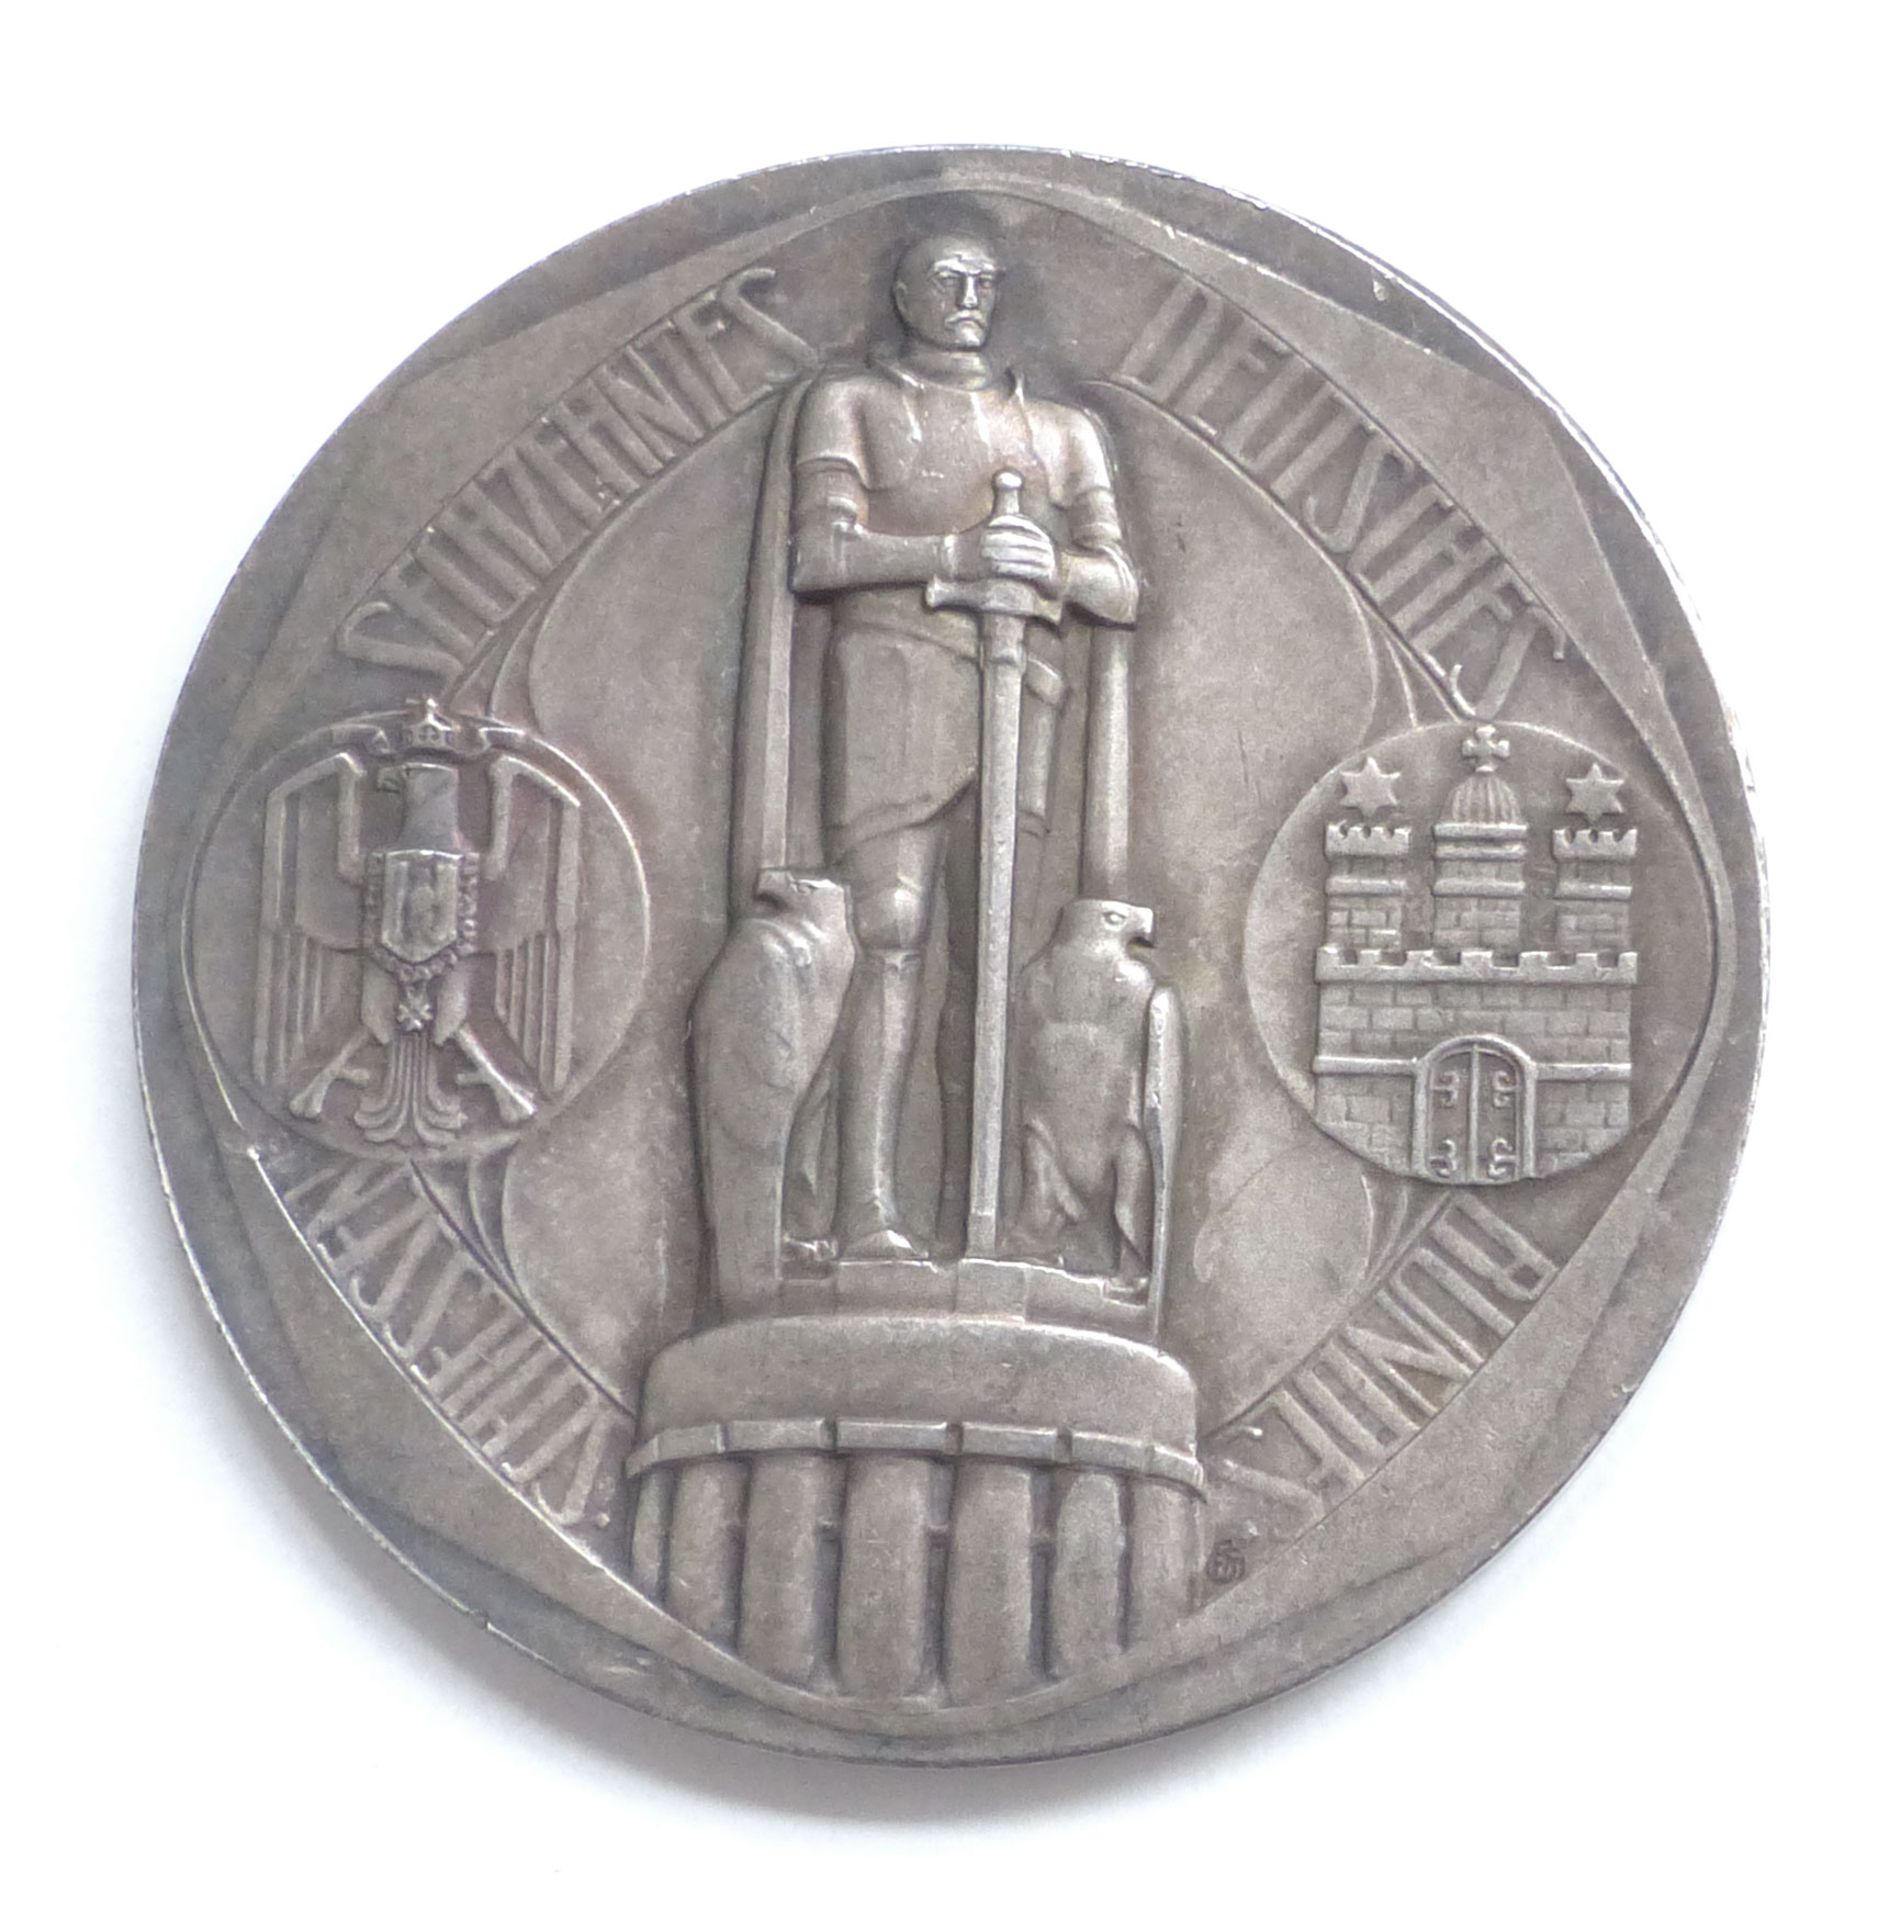 Schützen Hamburg Deutsches Bundesschießen 1909 Medaille silber ca. 40 mm Durchm. I-II